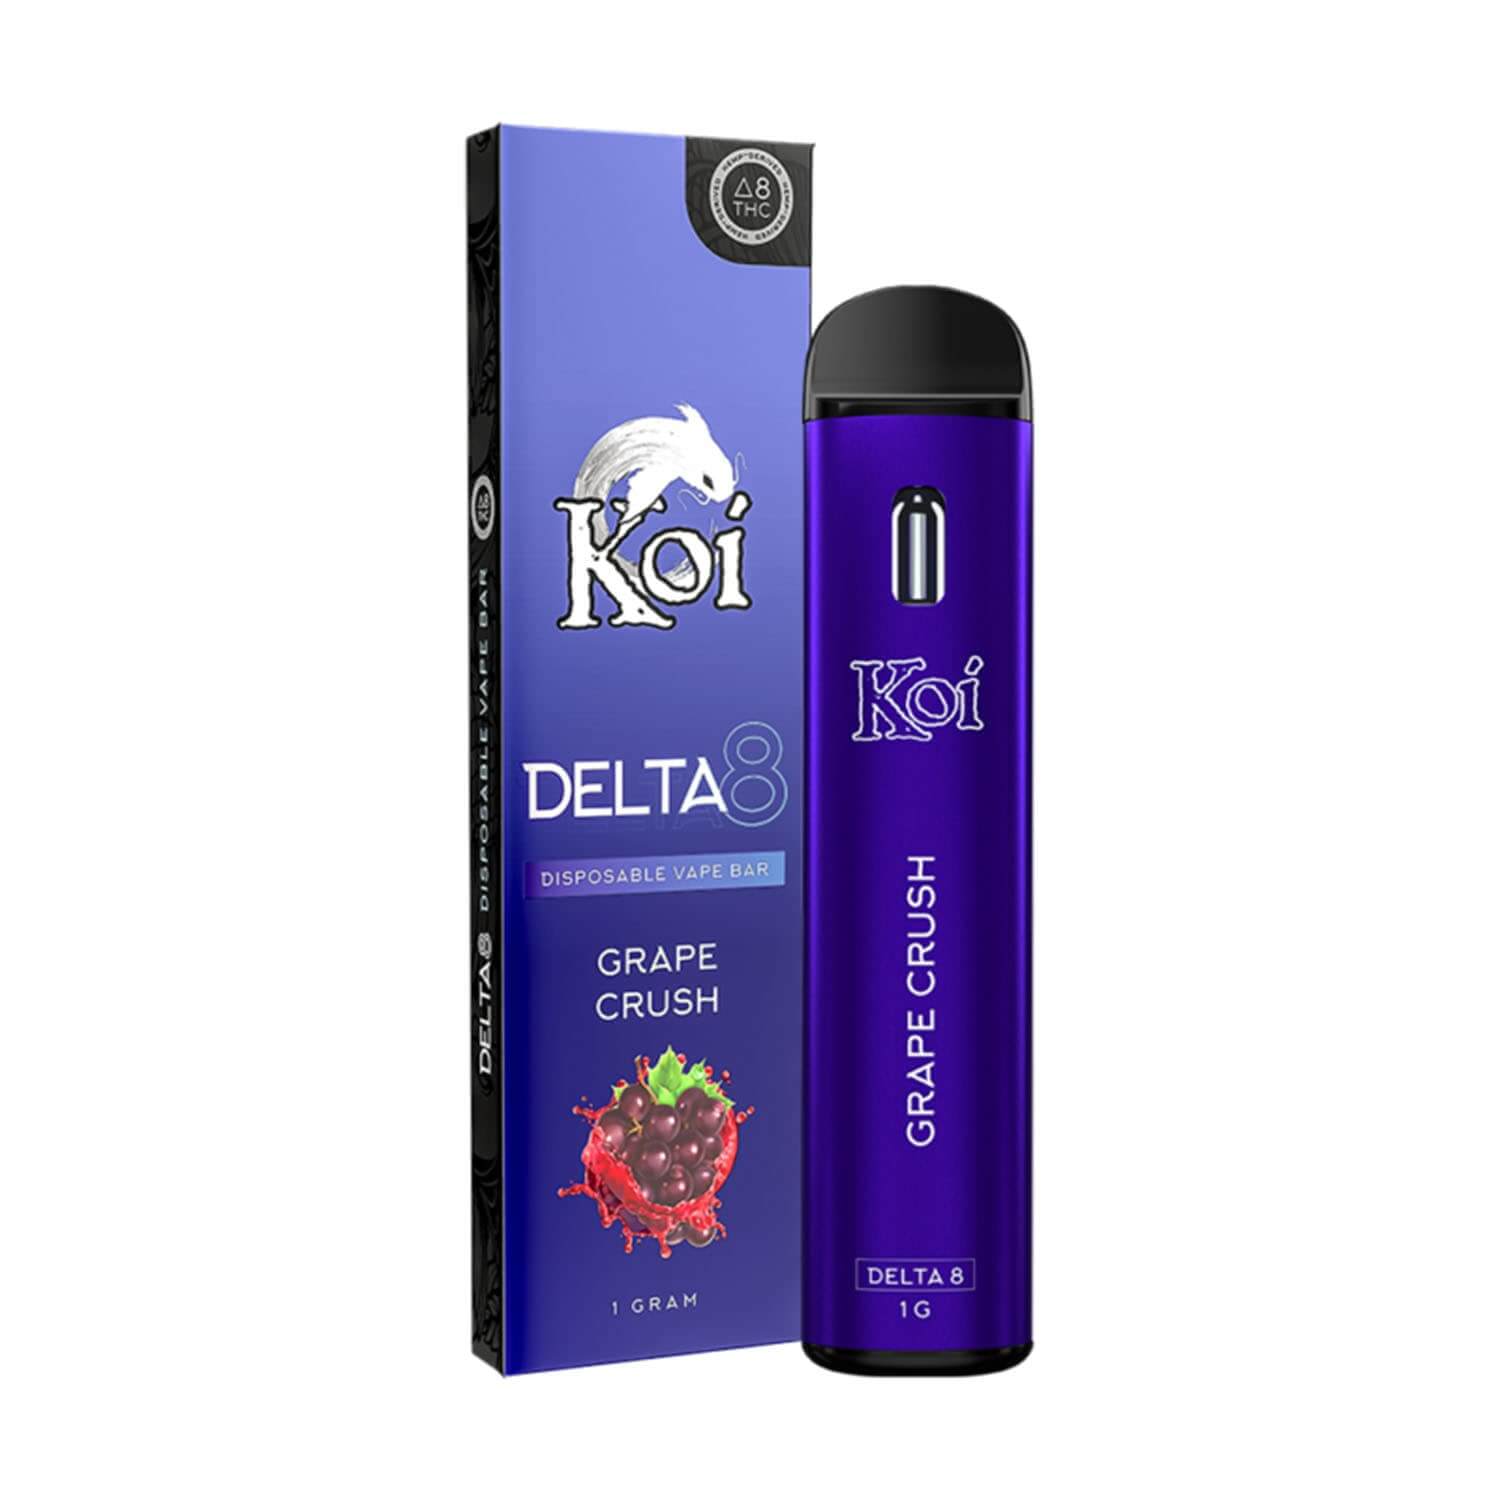 Koi Grape Crush Delta 8 Disposable Vape Bar (1g) Best Price